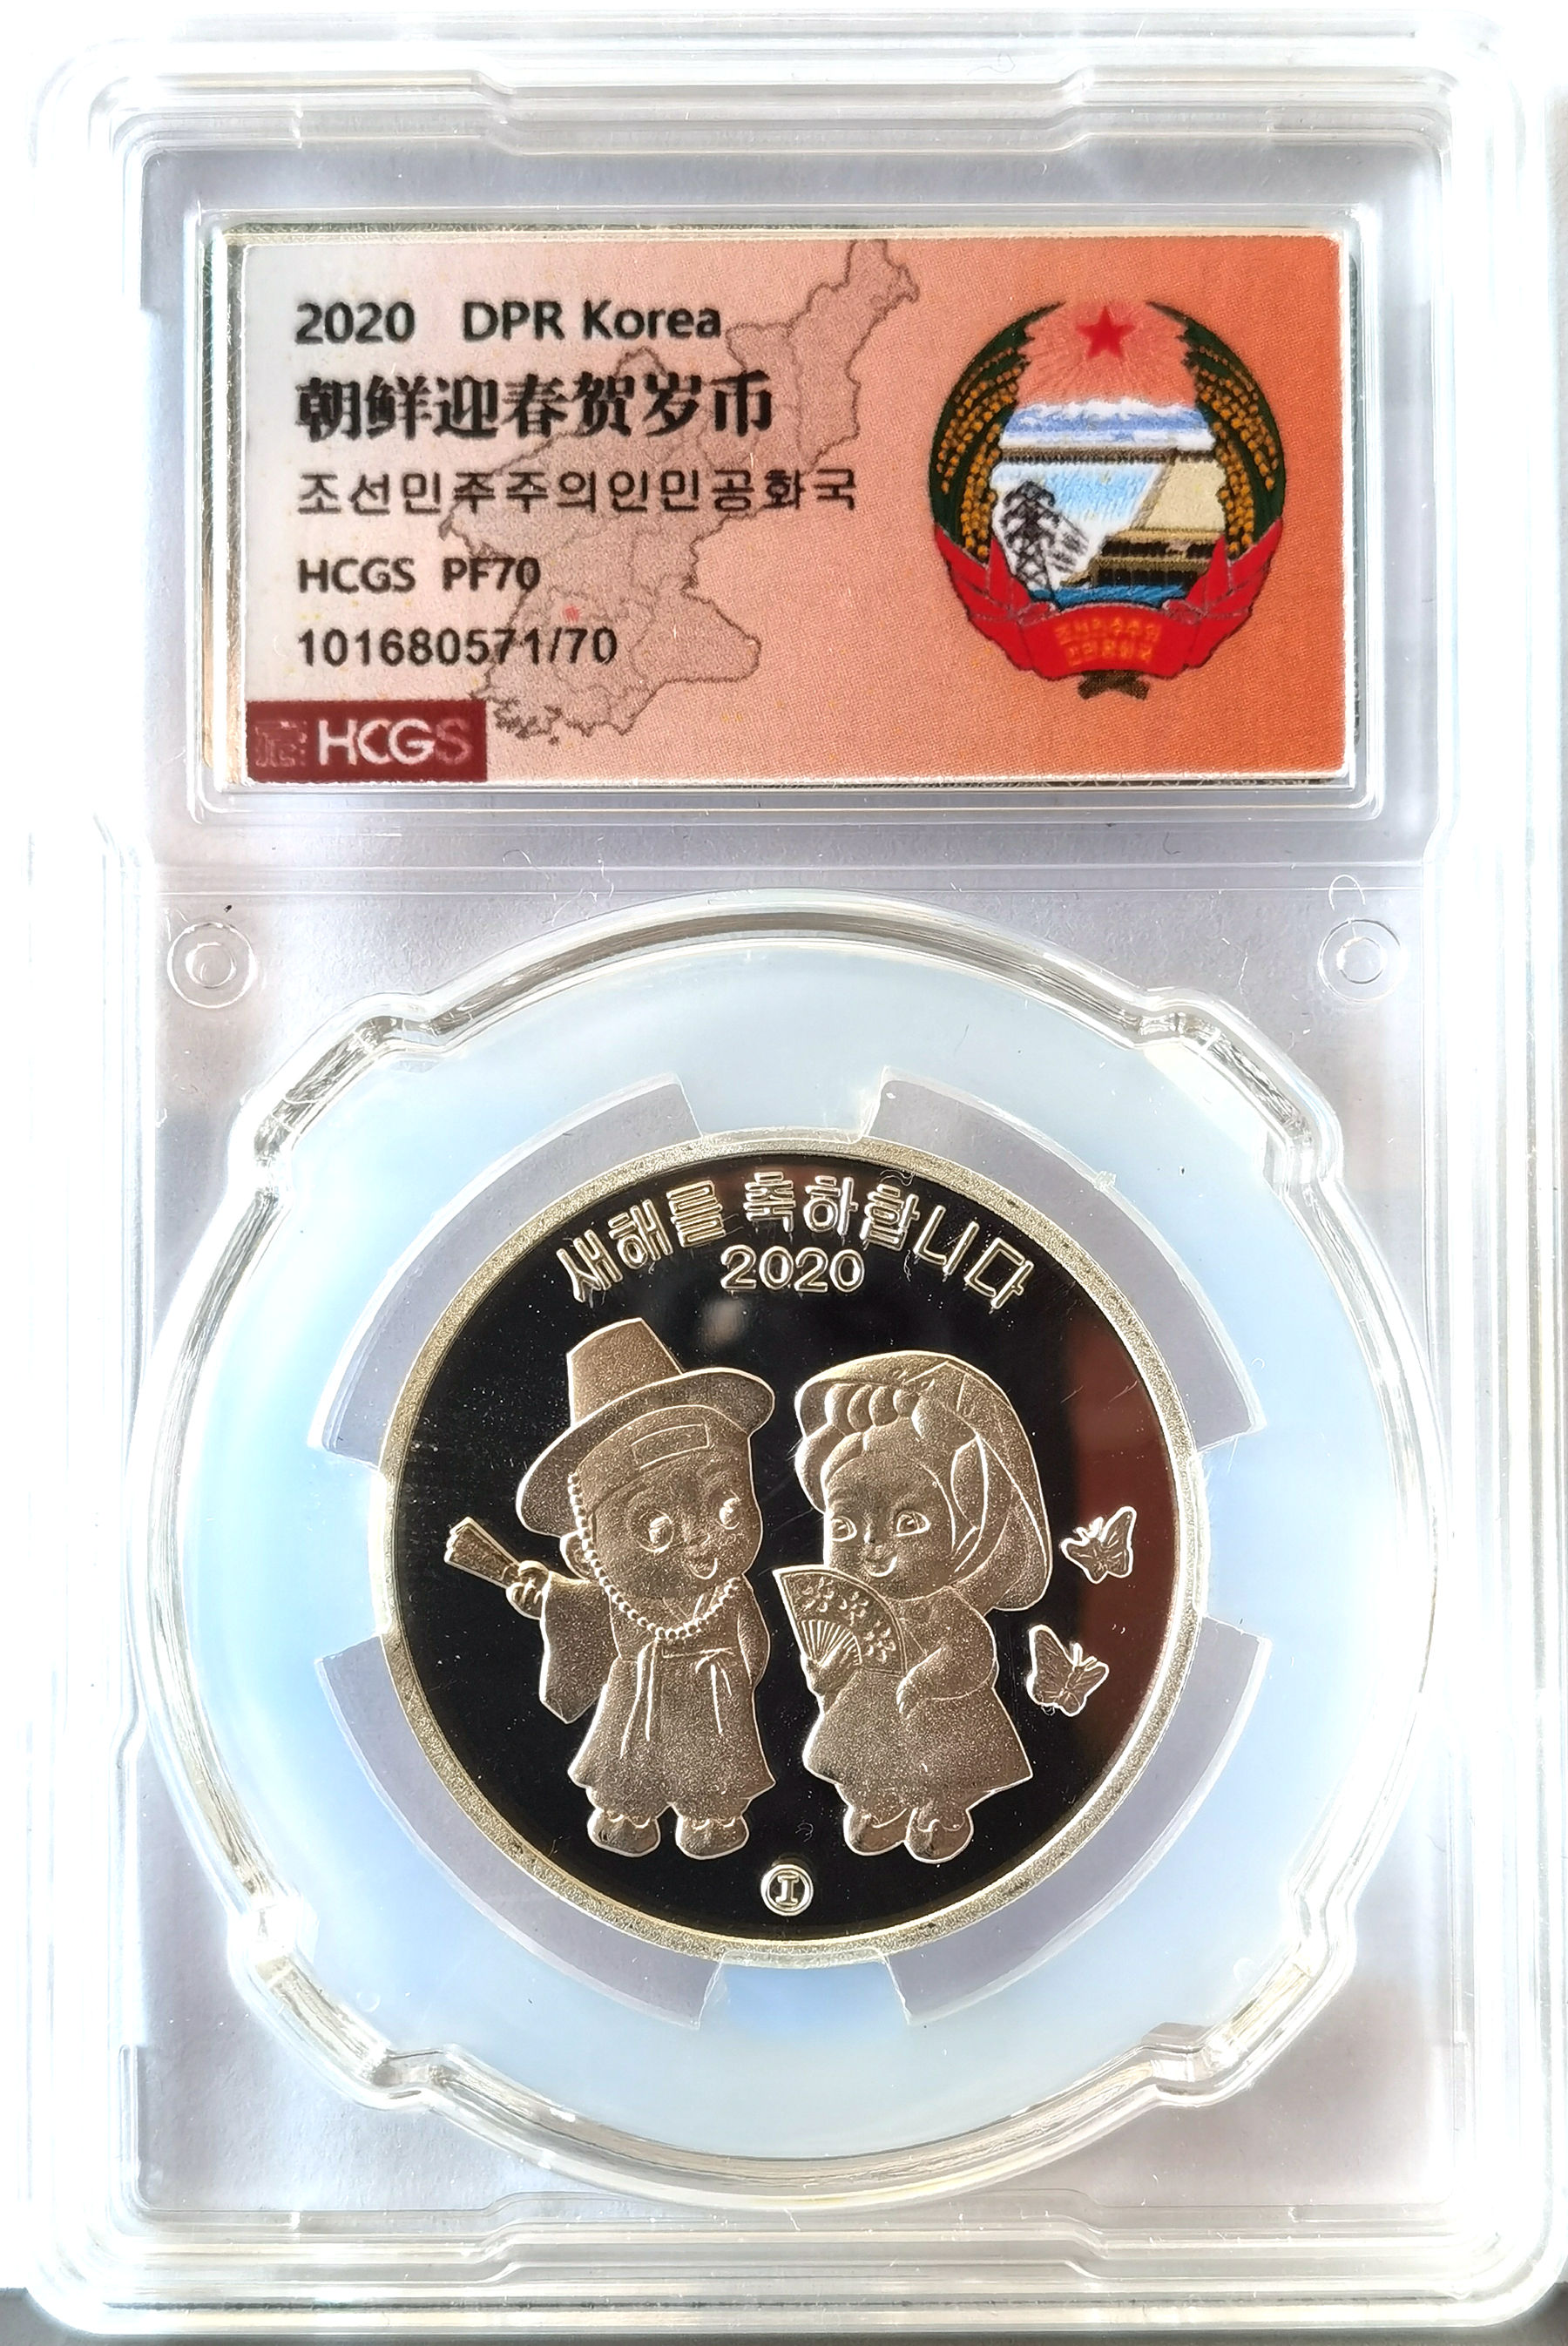 L3634, Korea Silver Coin "2020 Happy New Year", 1/4 Oz